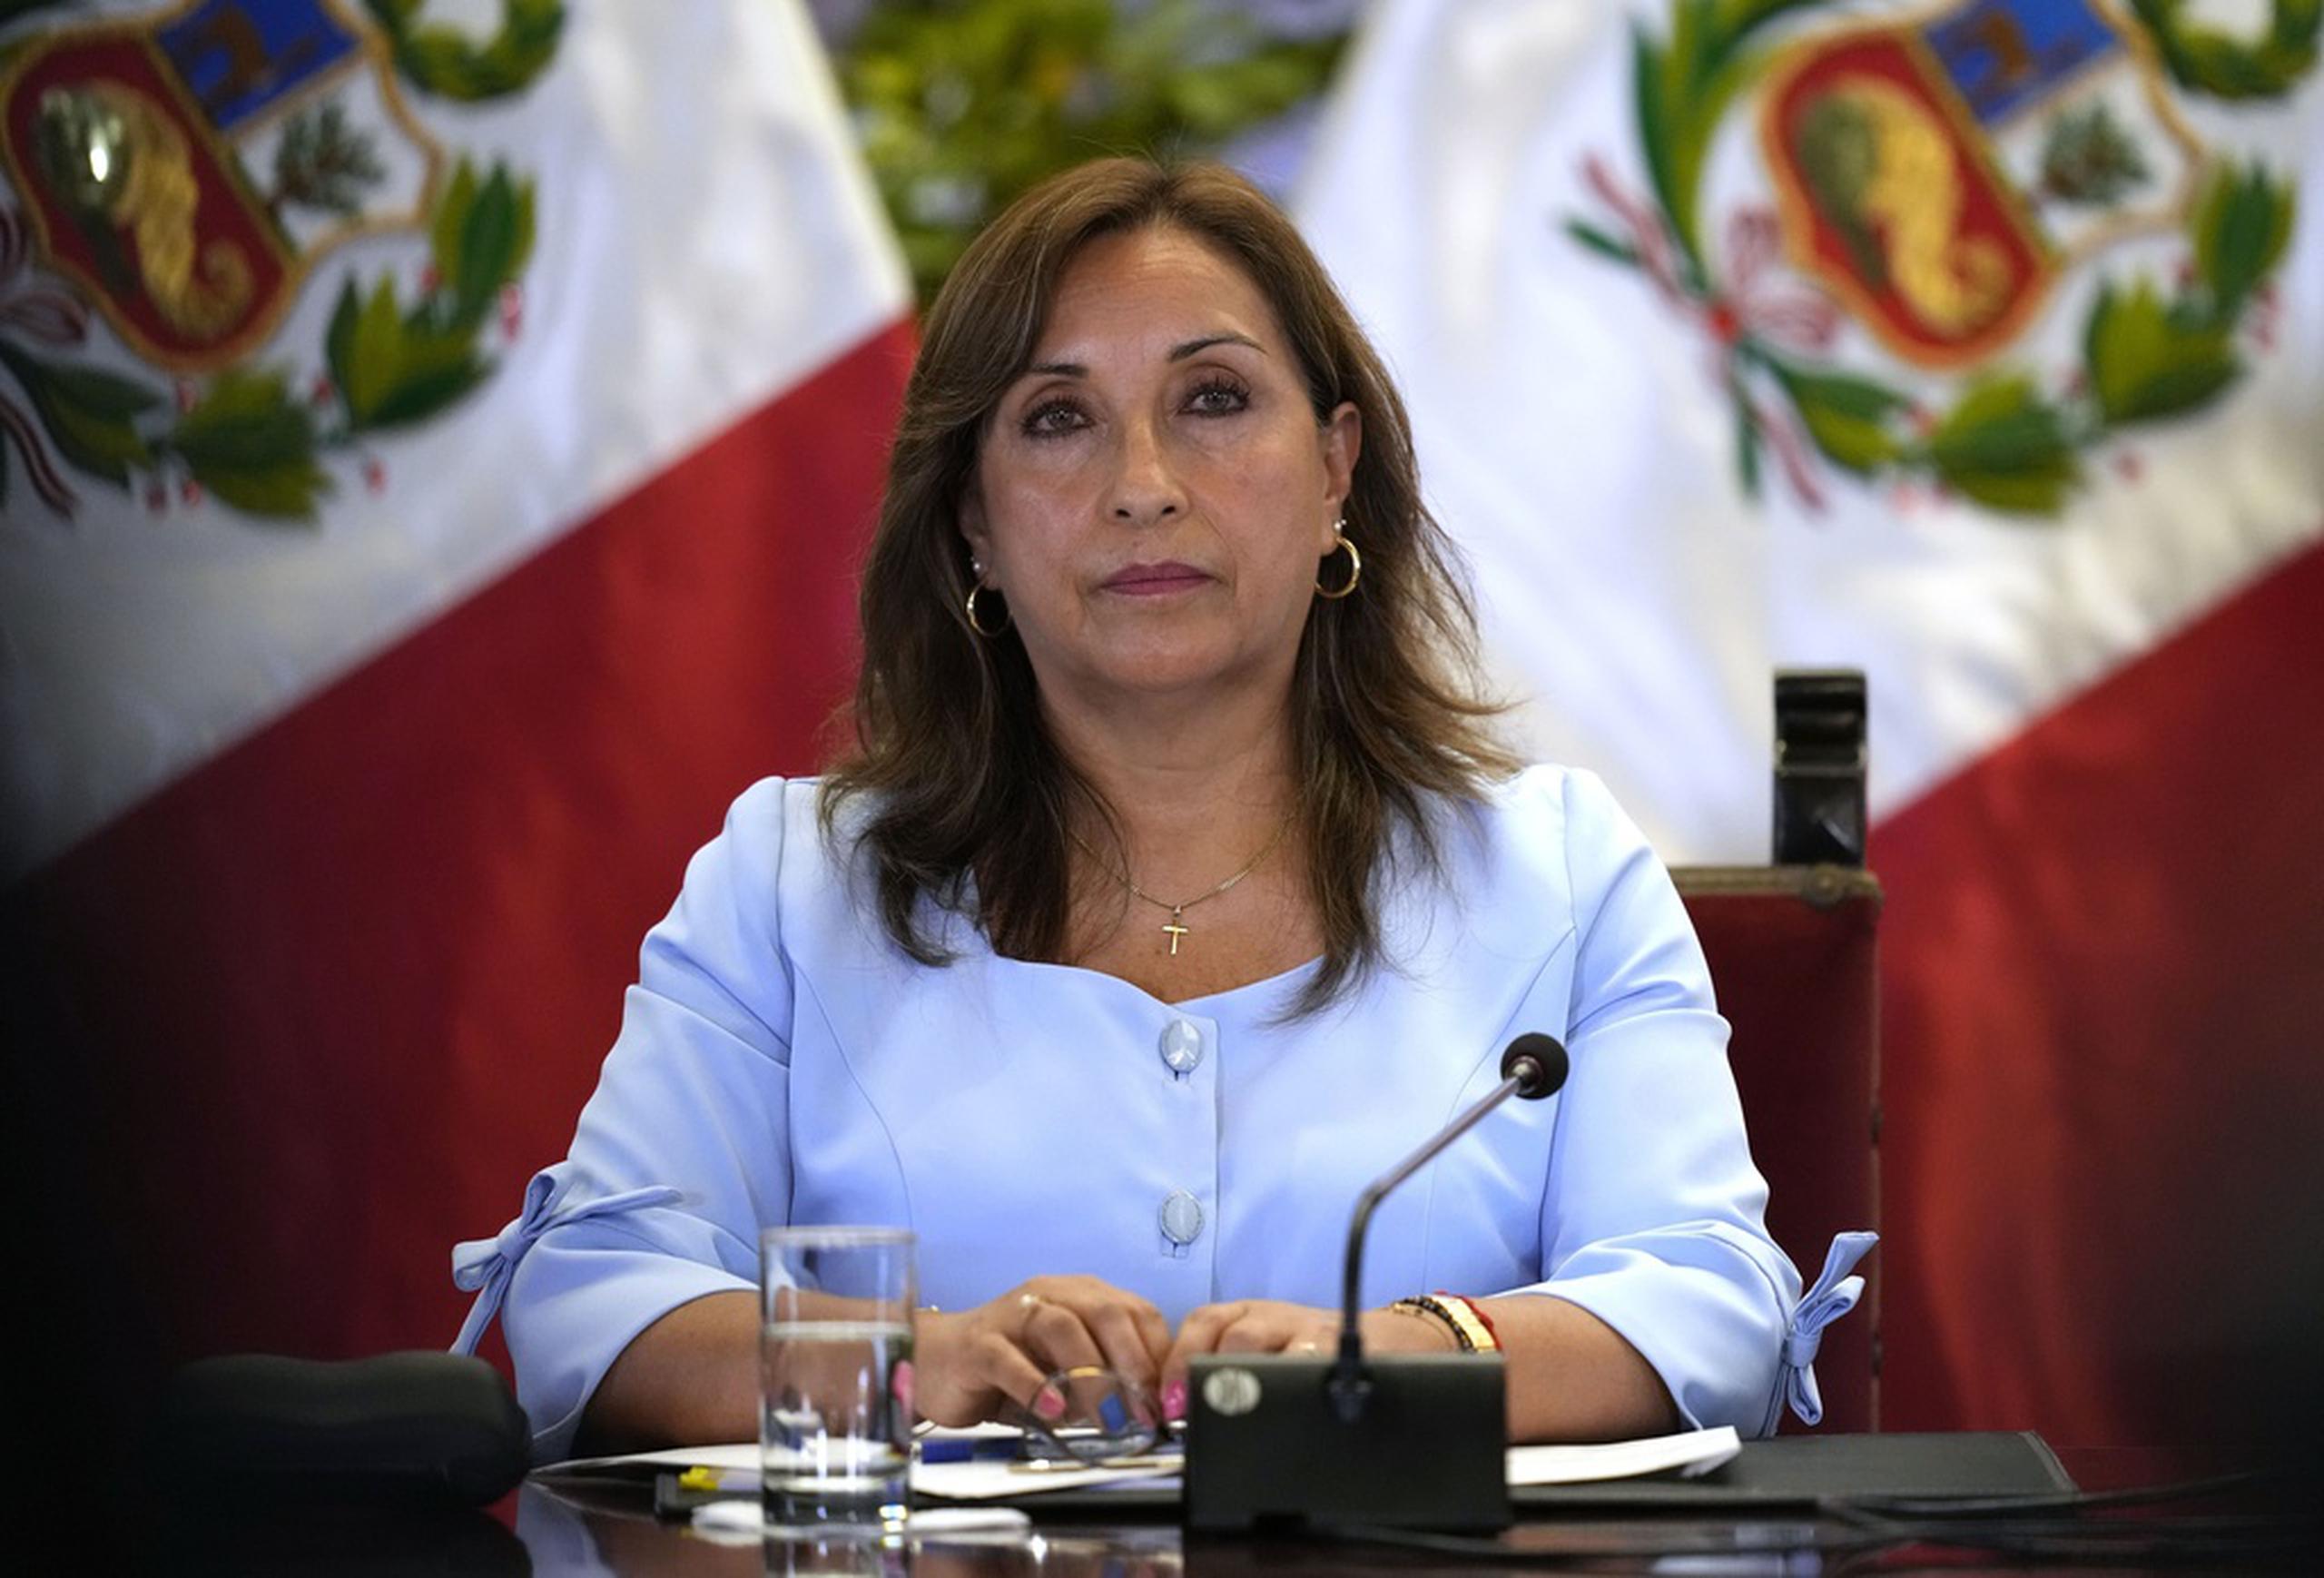 La presidenta peruana, Dina Boluarte, dijo el lunes a través de un comunicado difundido desde su despacho que esperaría al regreso de Otárola, de un foro de inversiones mineras al que asistió en Canadá.